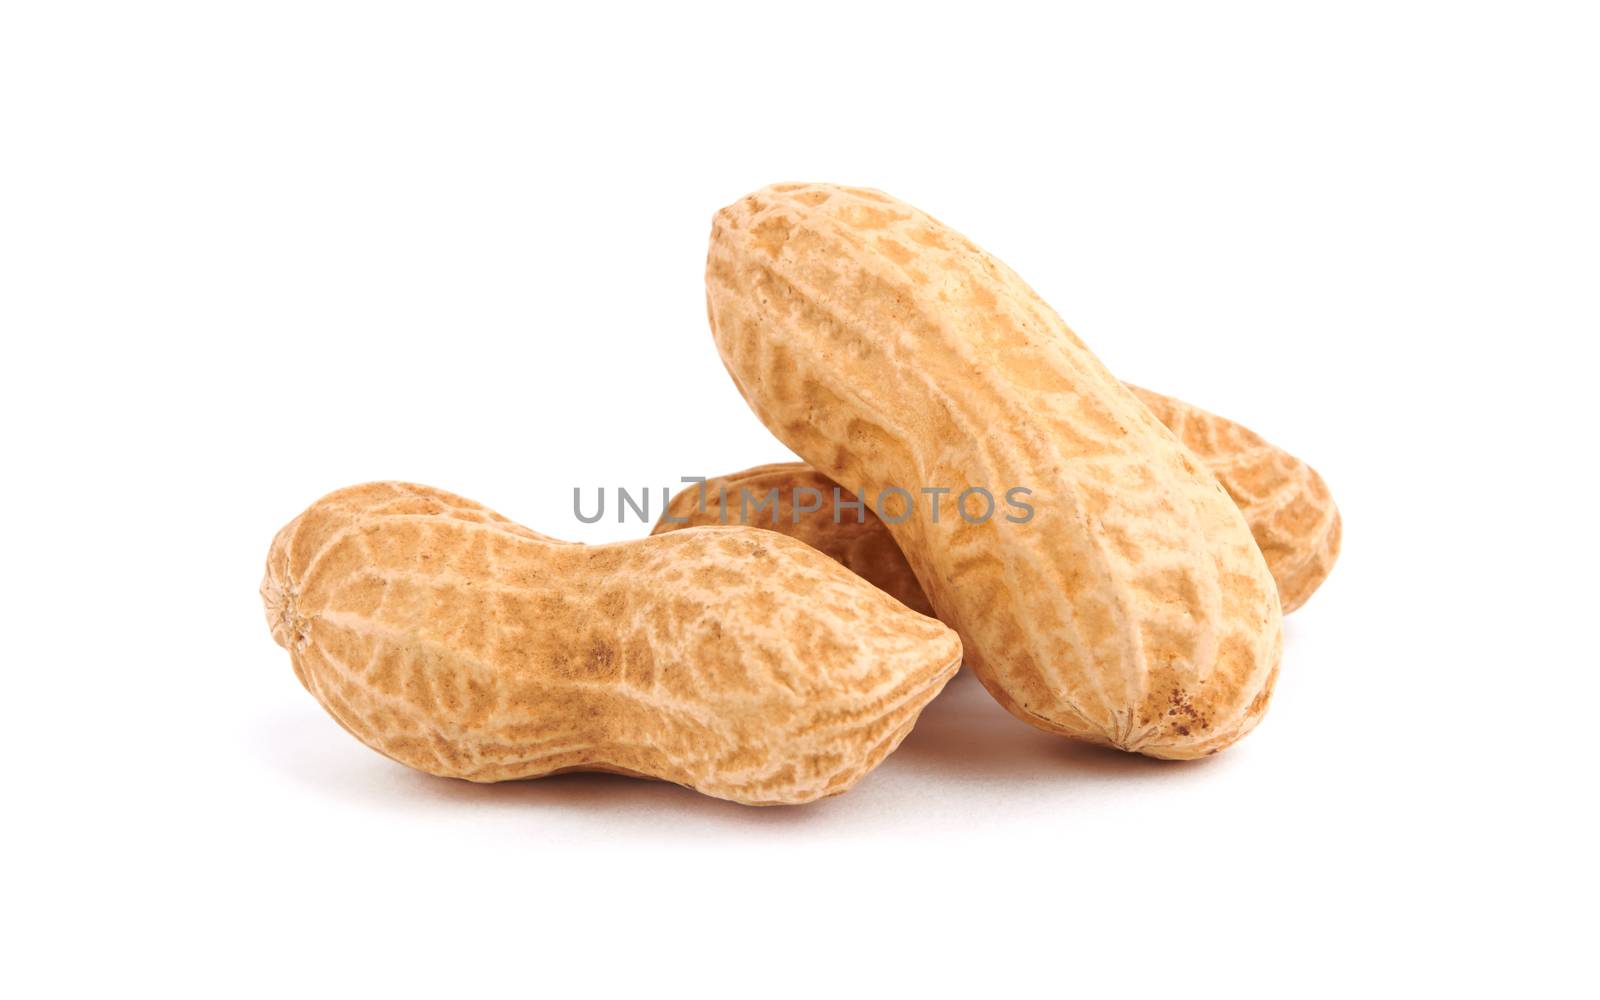 peanuts by pioneer111